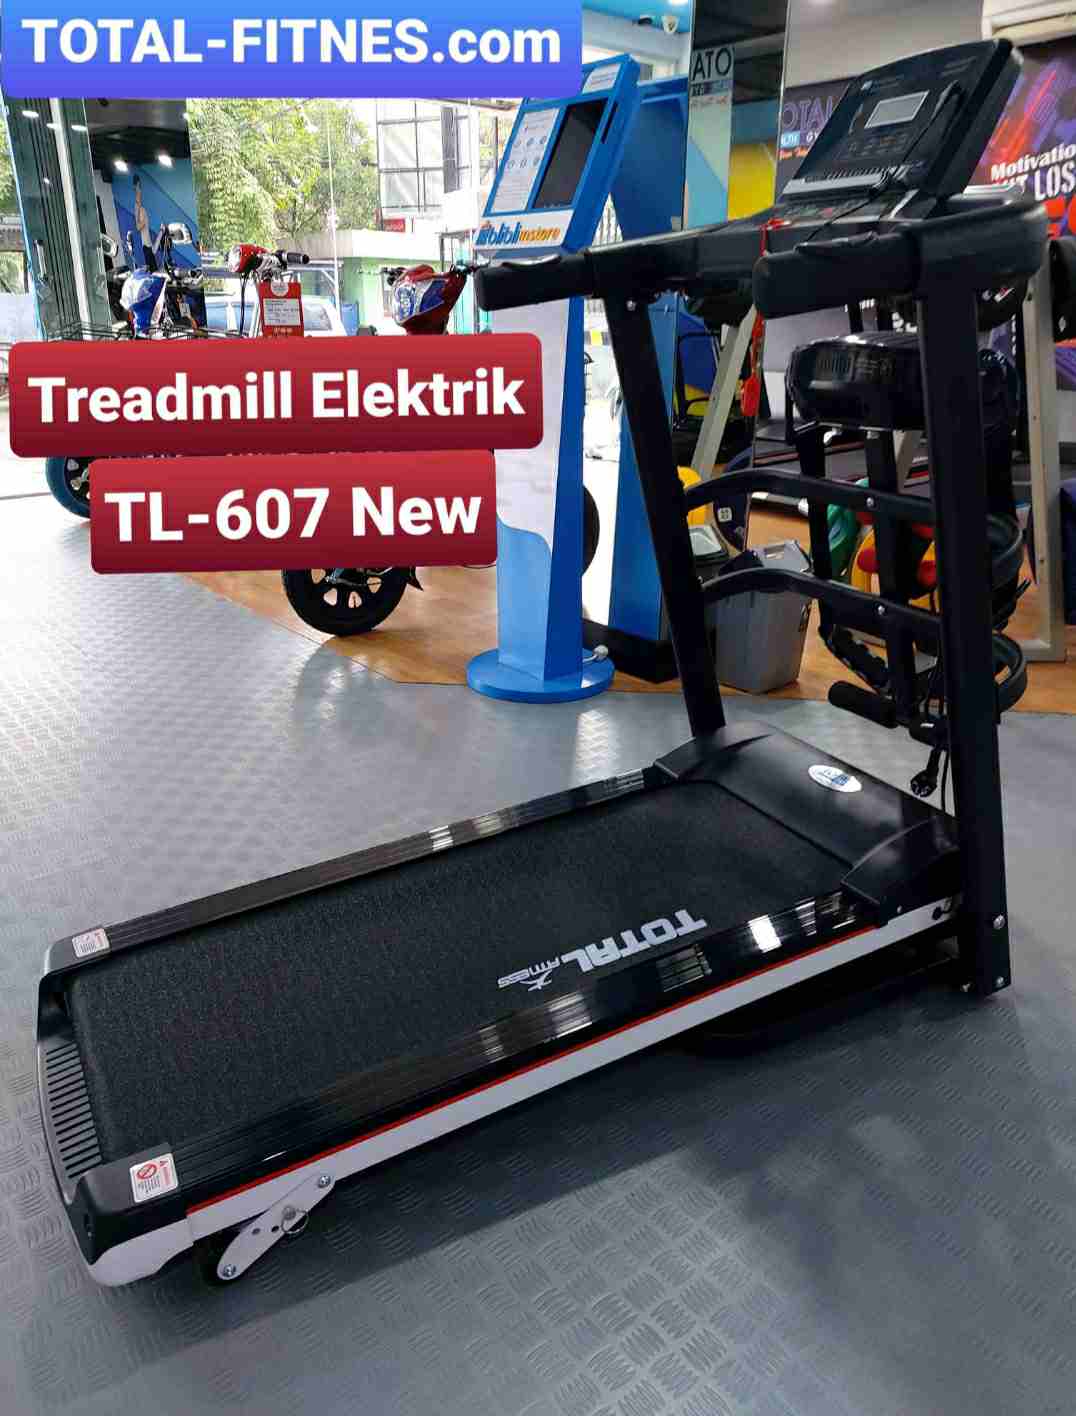 TL607TreadmillElektrik-3Fungsi-TotalFitness